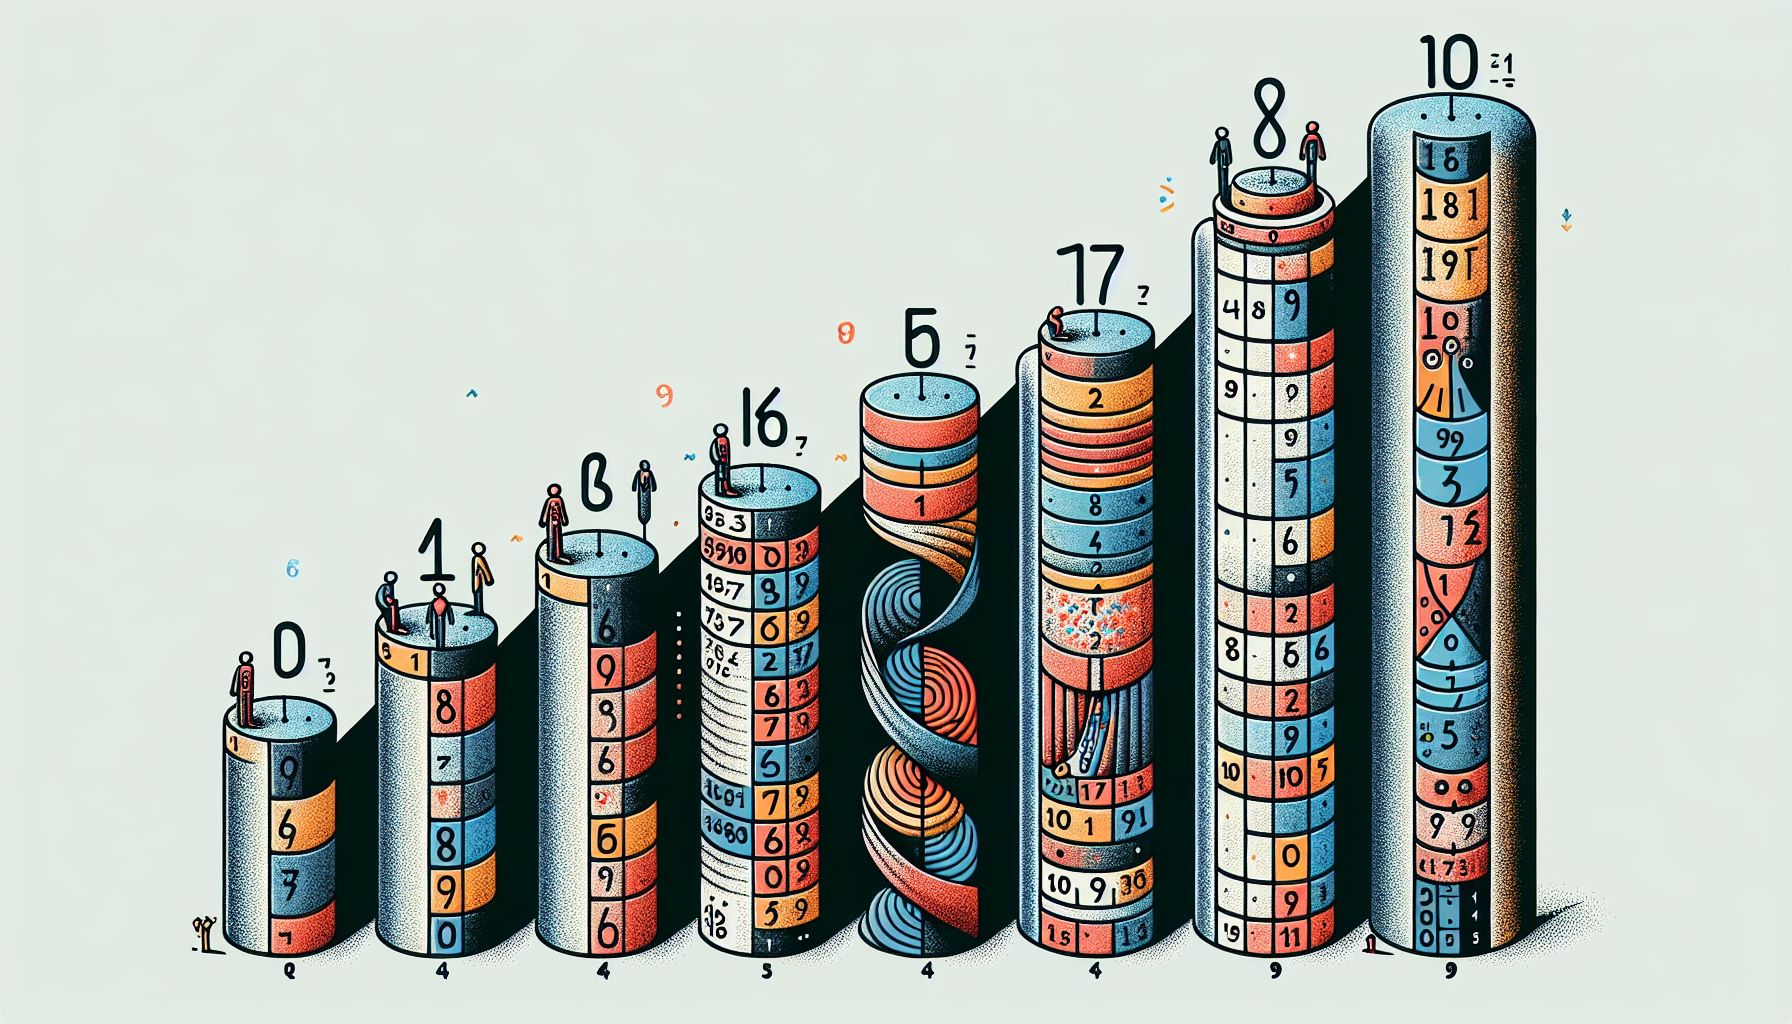 Illustration of decimal number system